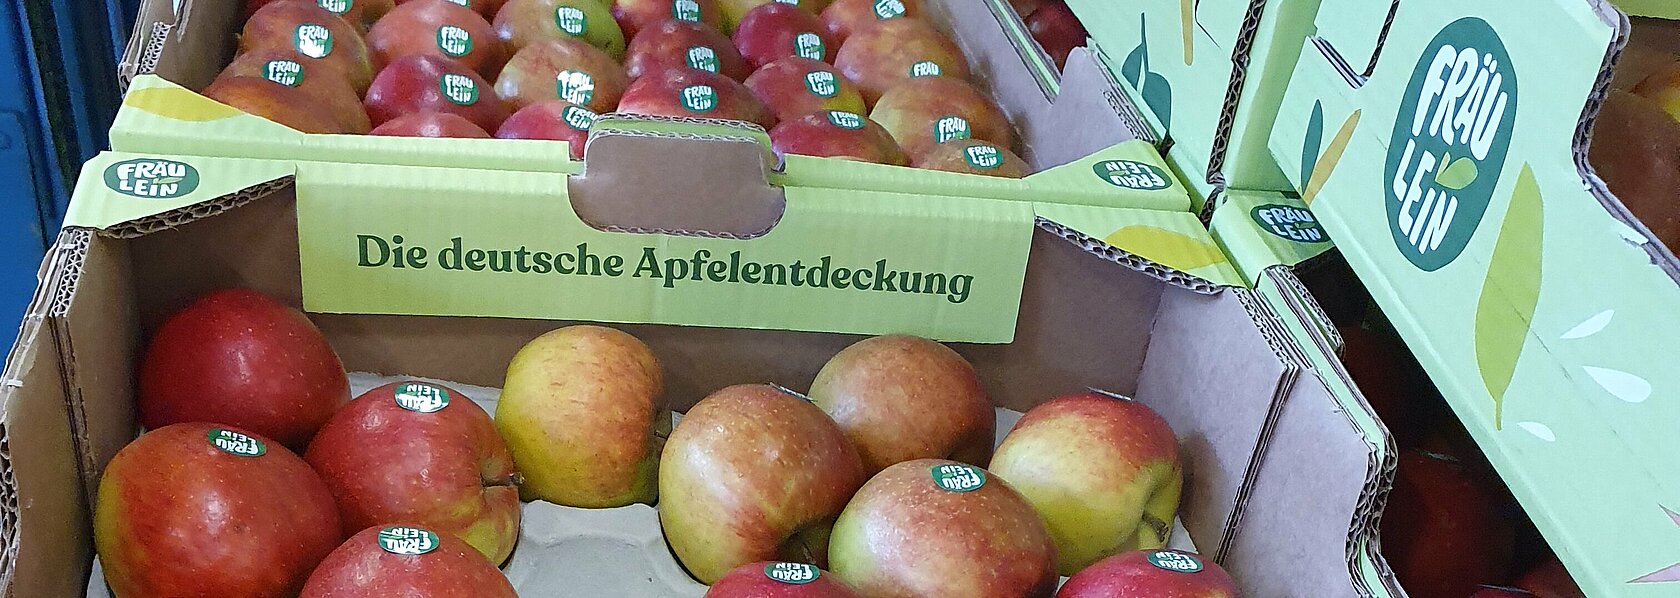 Apfelsorte Fräulein